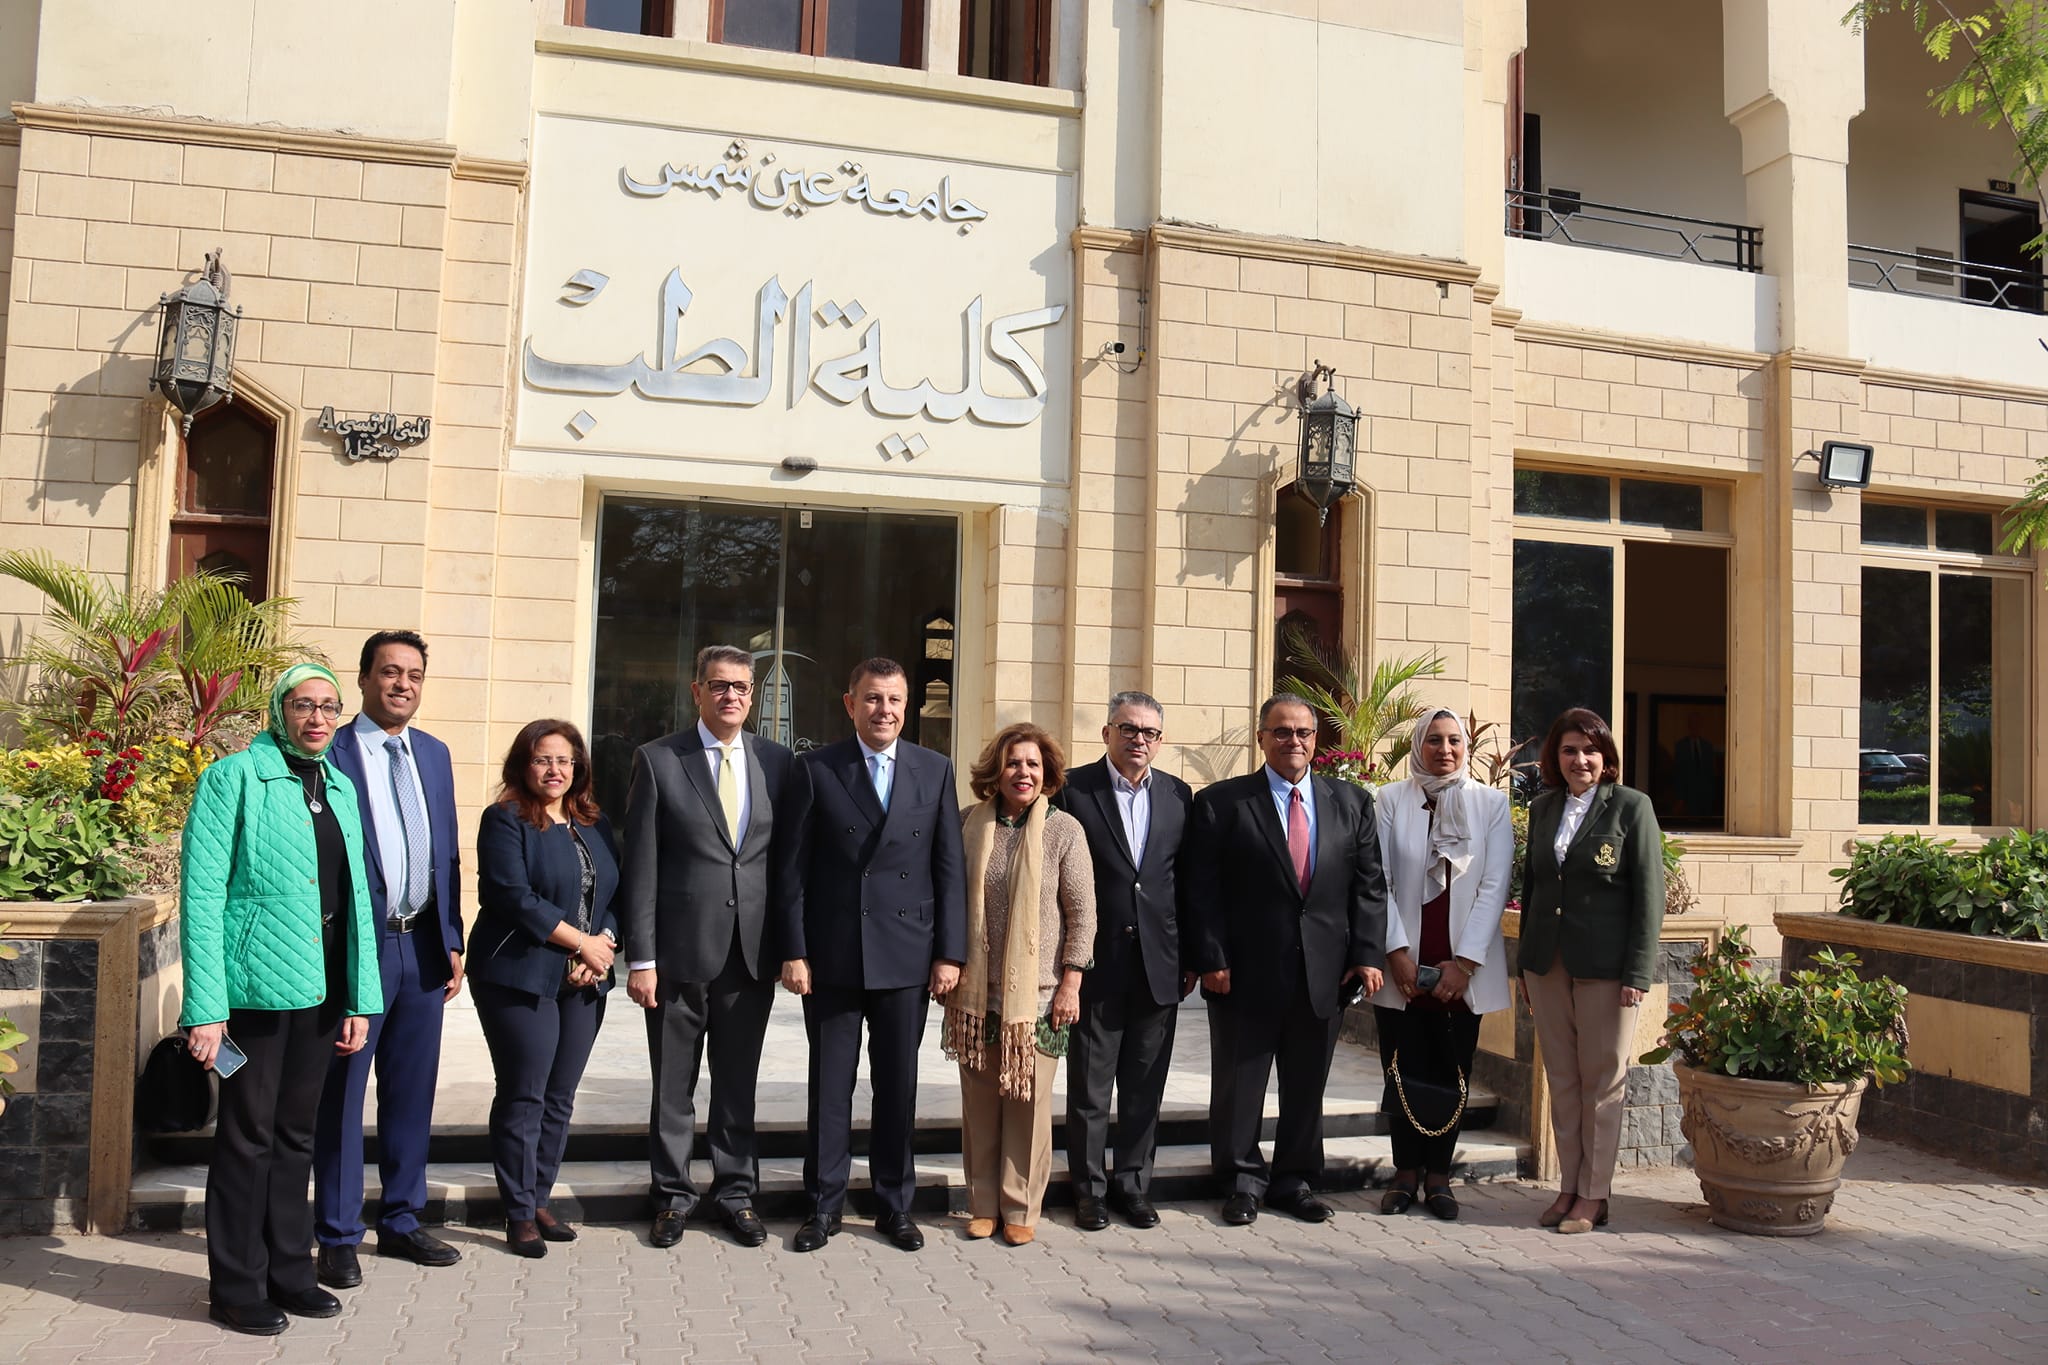  المجلس يوقع بروتوكول تعاون مشترك مع جامعة عين شمس 